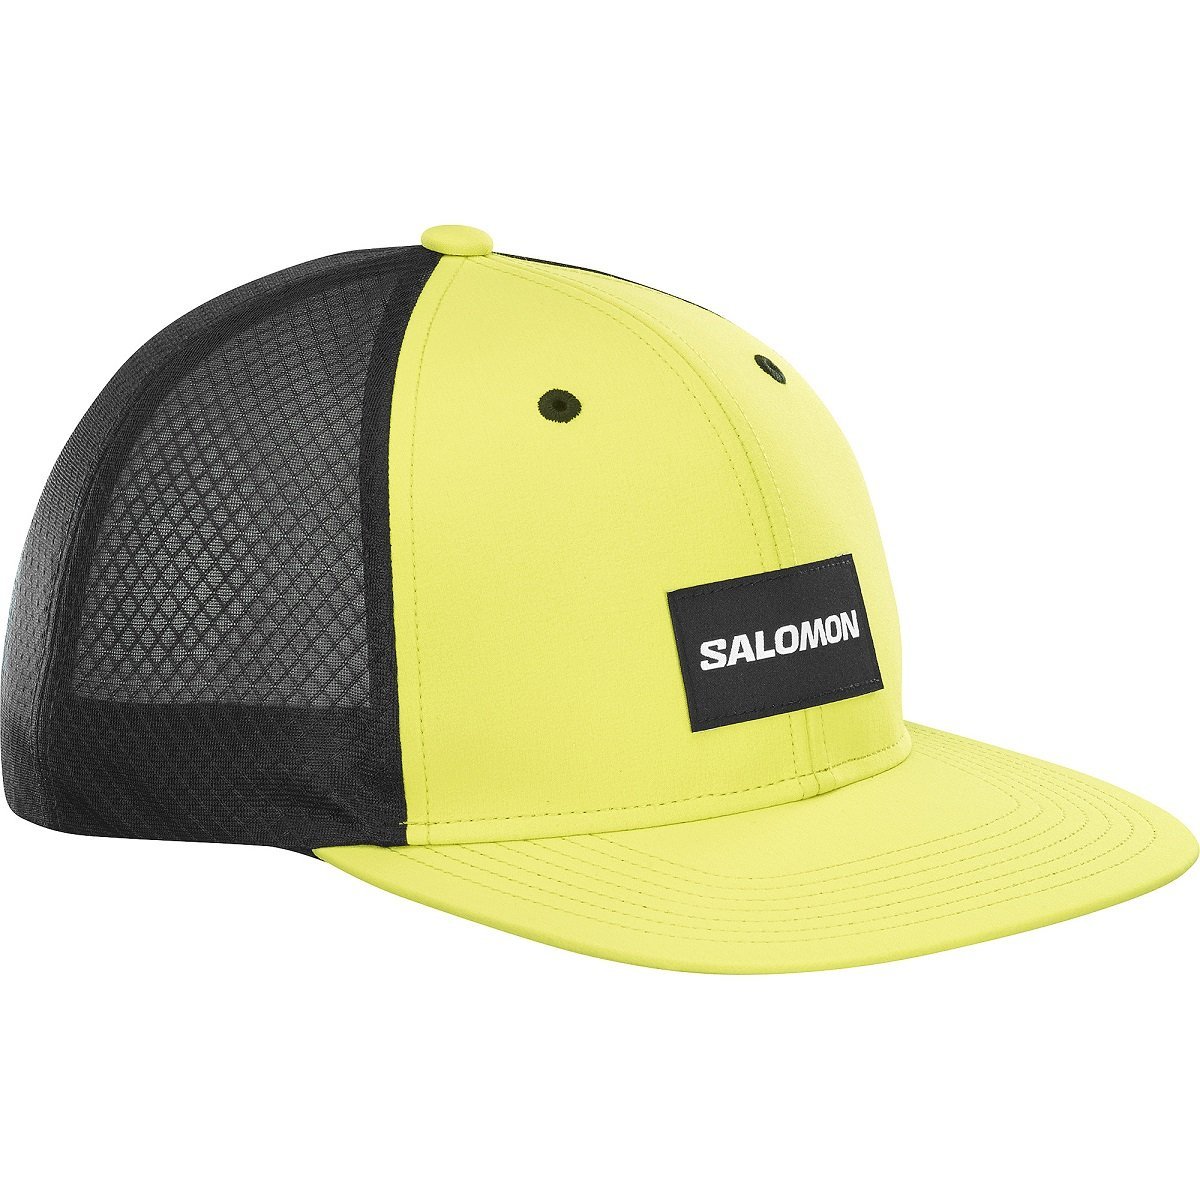 Salomon Trucker Flat Cap - žltá/čierna